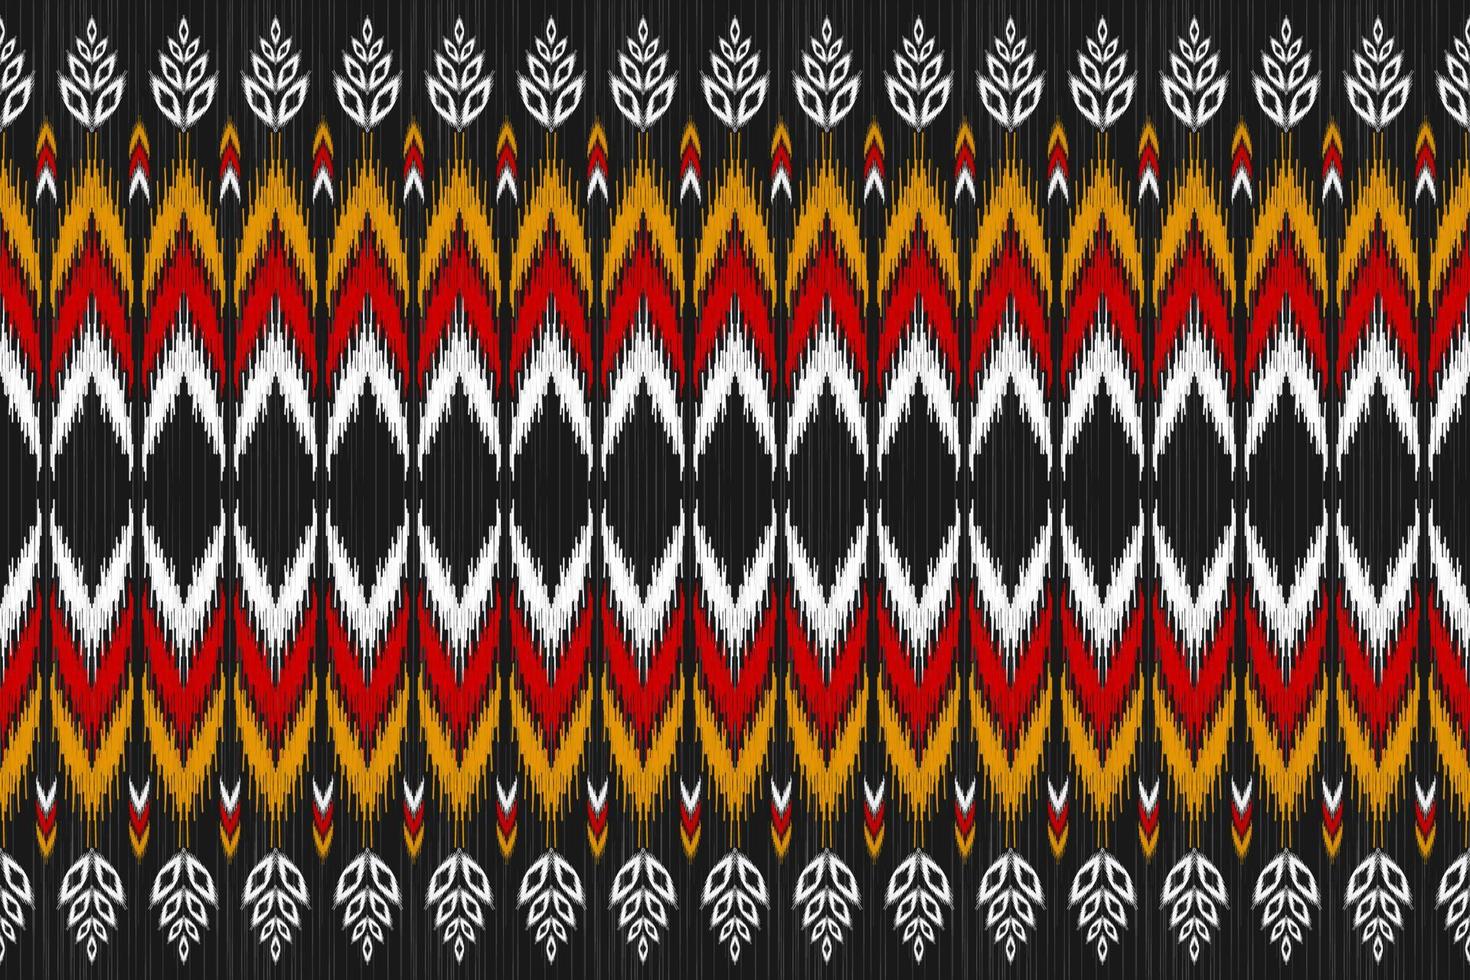 tapijt bloem patroon kunst. meetkundig etnisch ikat naadloos patroon in stam. Amerikaans, Mexicaans stijl. vector